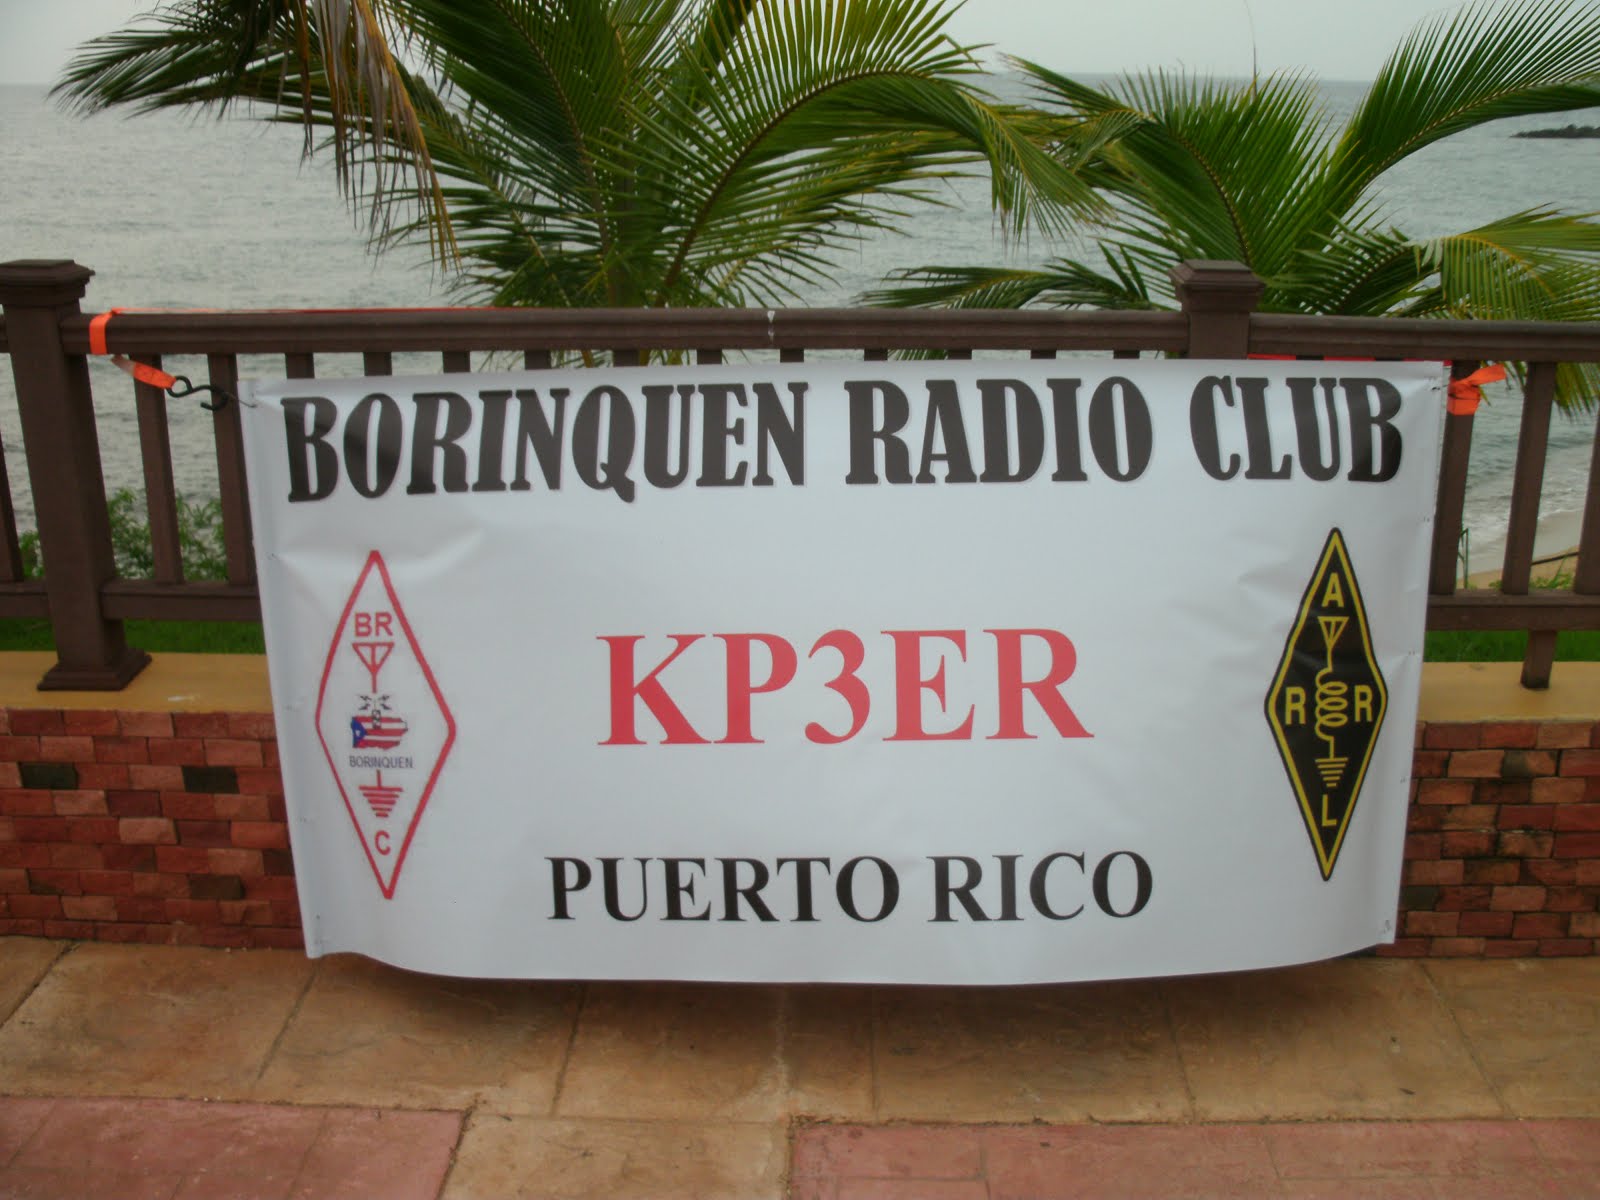 KP3ER- BORINQUEN RADIO CLUB